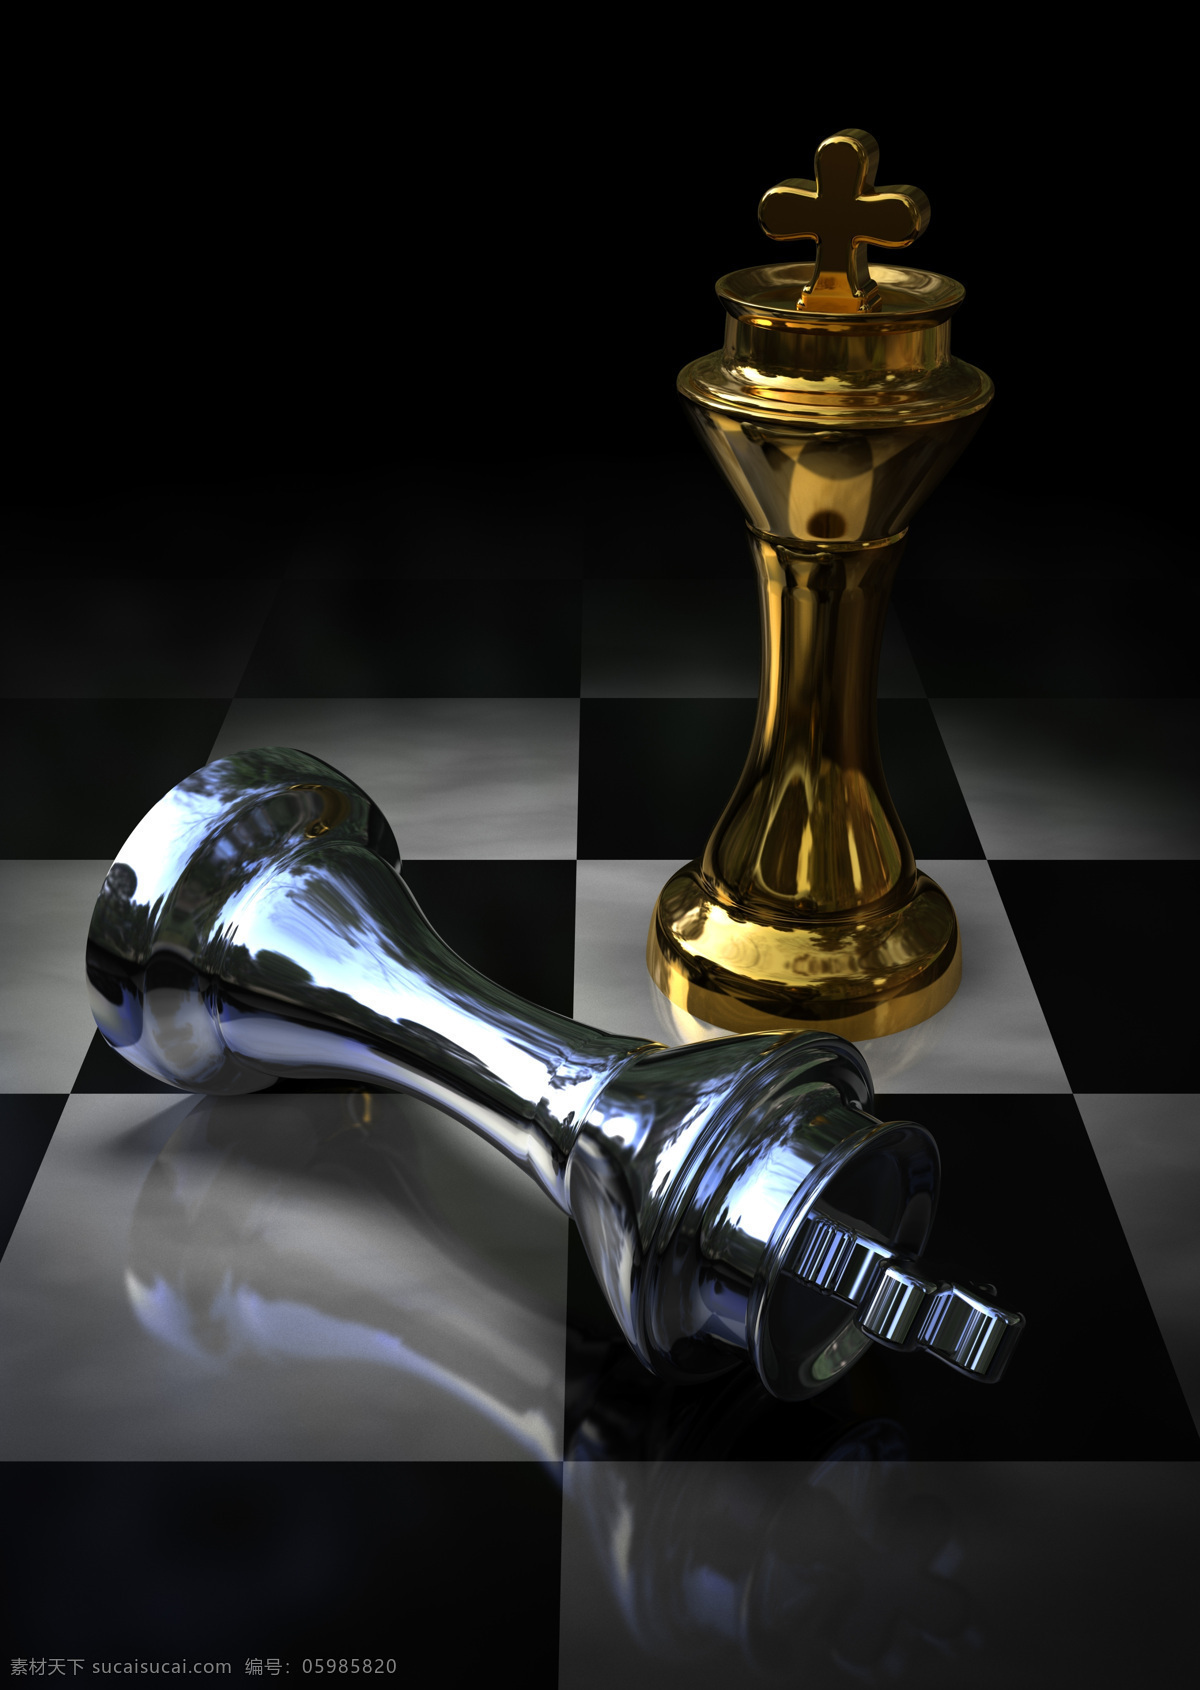 国际象棋 棋子 影音娱乐 生活百科